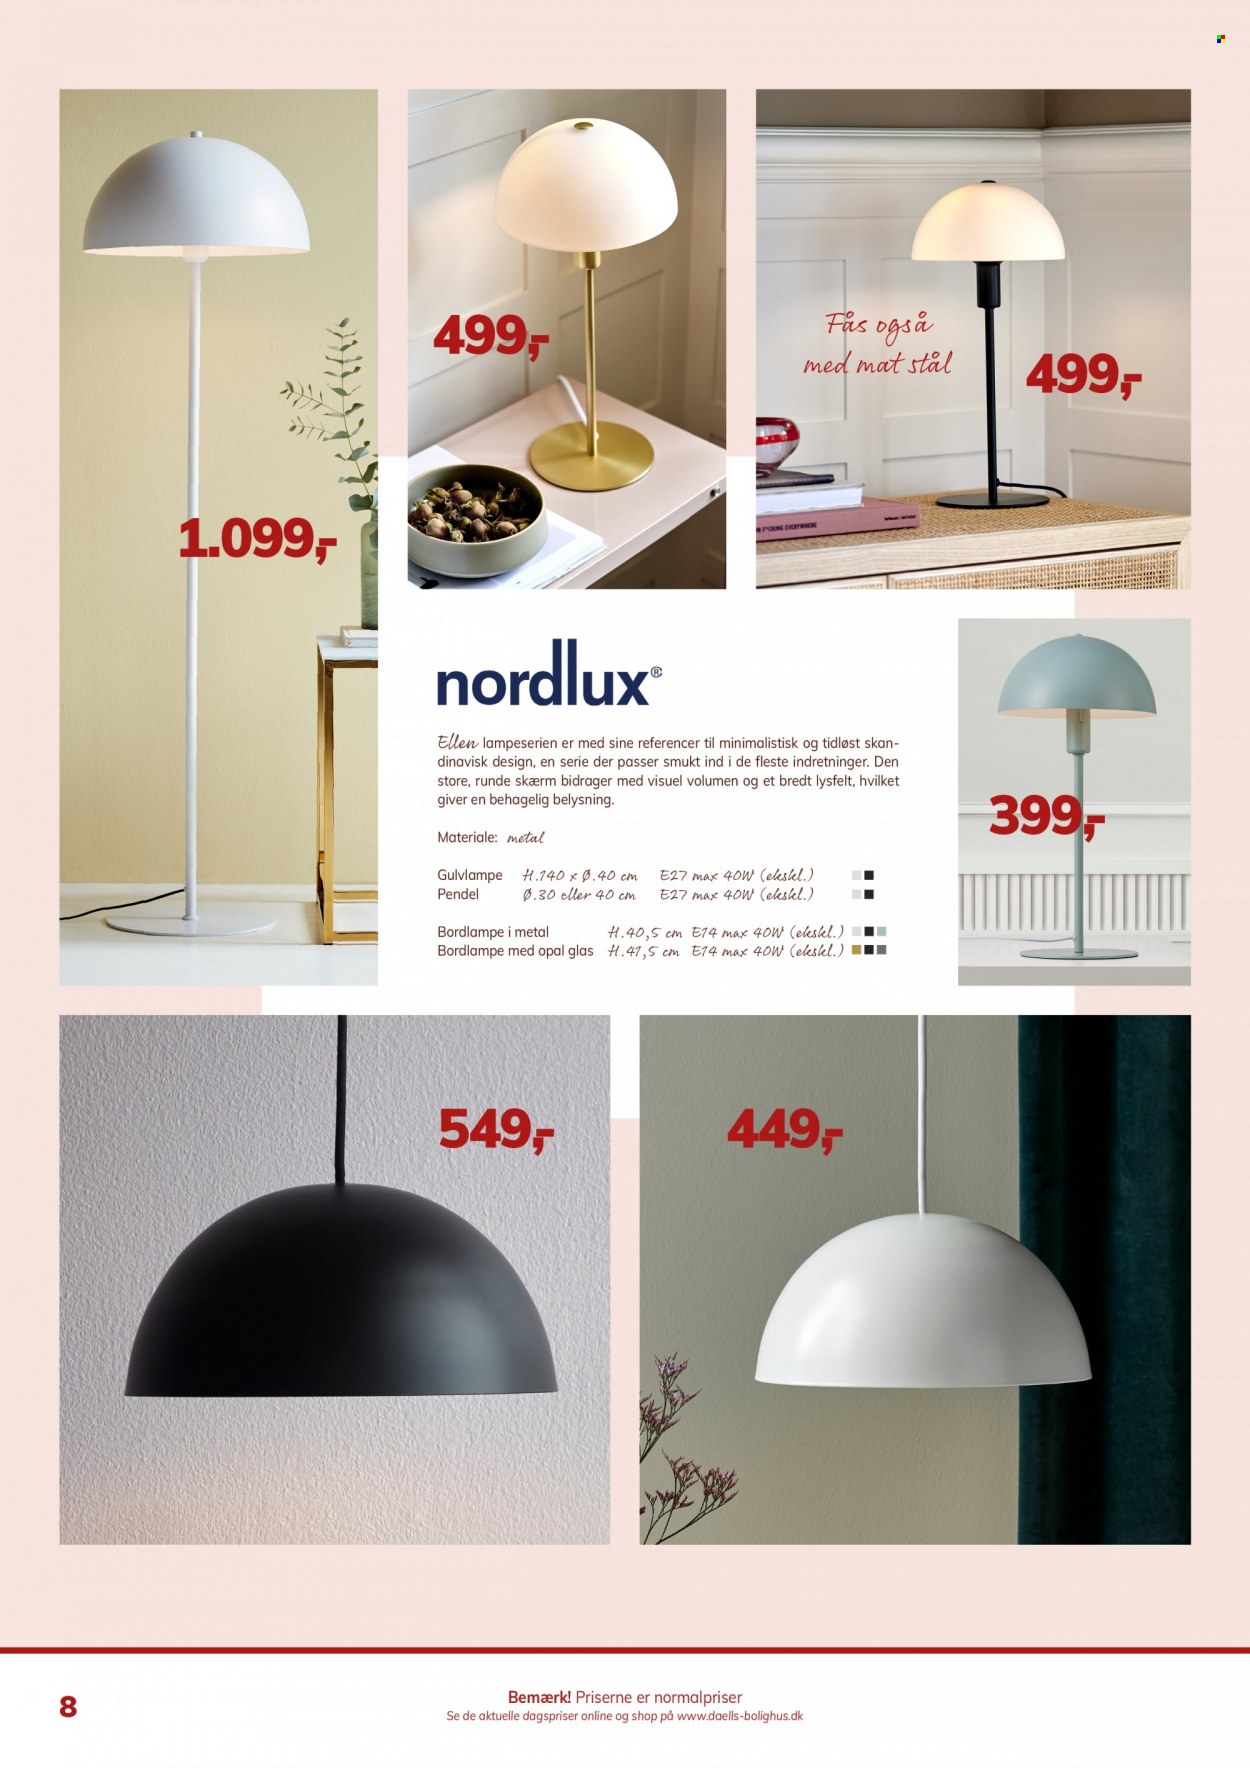 thumbnail - Daells Bolighus tilbud  - tilbudsprodukter - pendel, bordlampe, gulvlampe, Nordlux. Side 8.